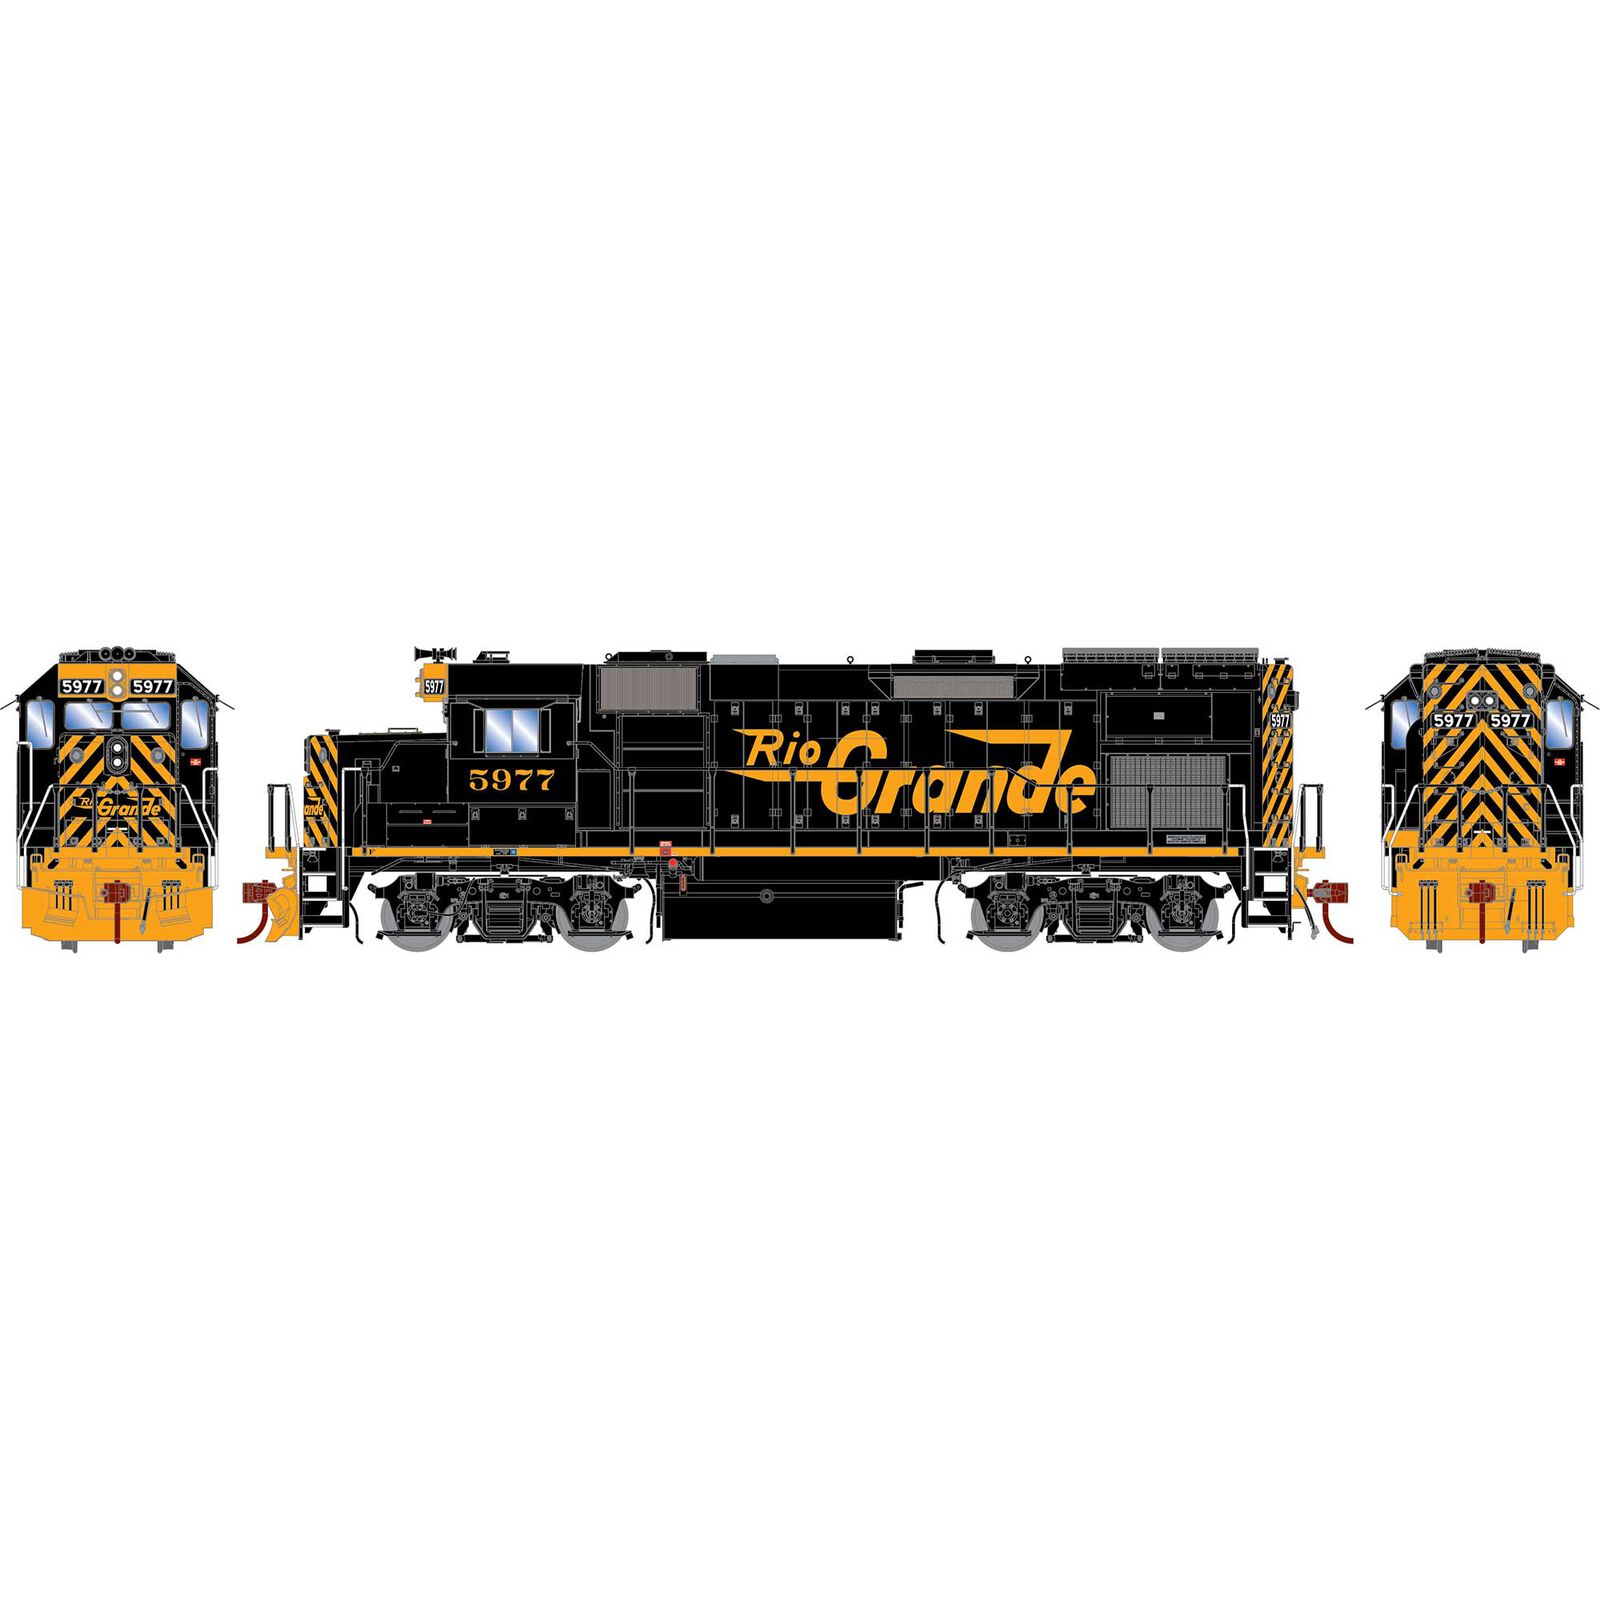 HO GP15T Locomotive, Rio Grande #5977